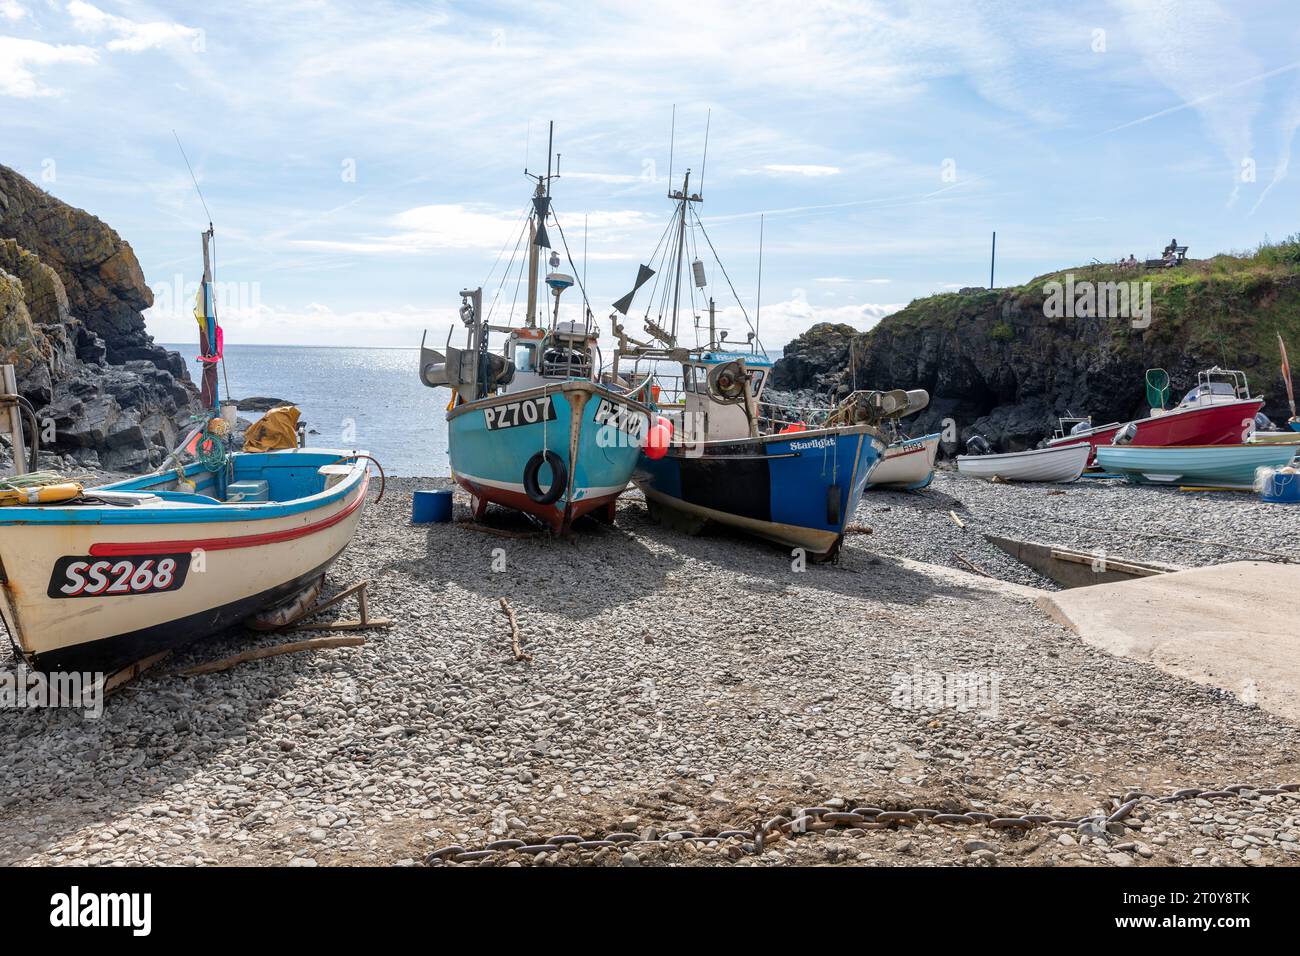 Cadgwith villaggio sulla penisola di Lizard, Cornovaglia, Inghilterra, con barche da pesca sulla spiaggia del porto e vista del promontorio della baia Foto Stock